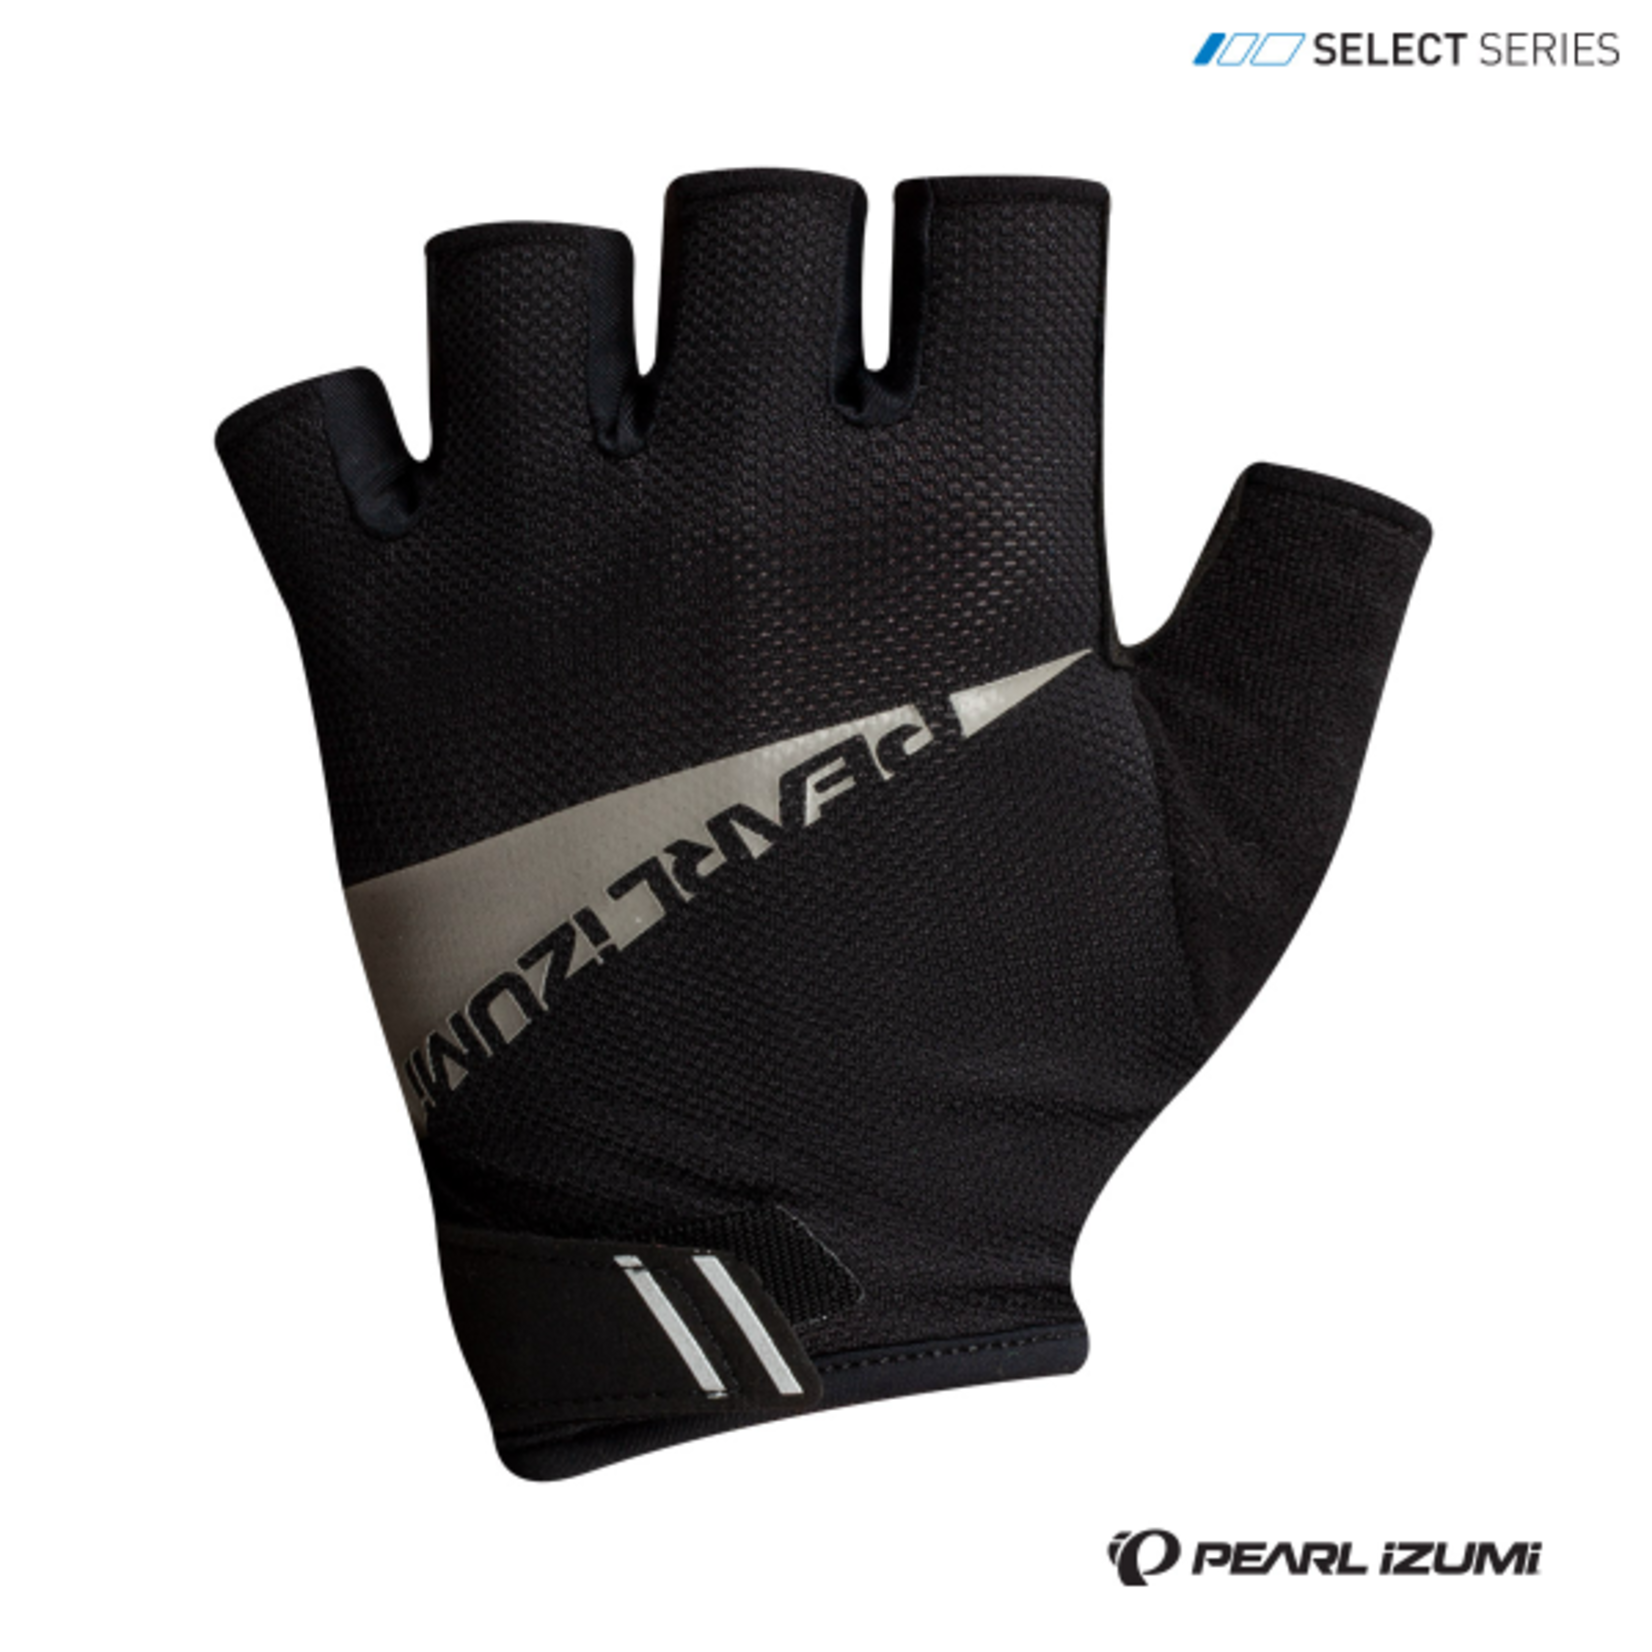 Pearl Izumi PEARL iZUMi Men's  Select  Gloves Black